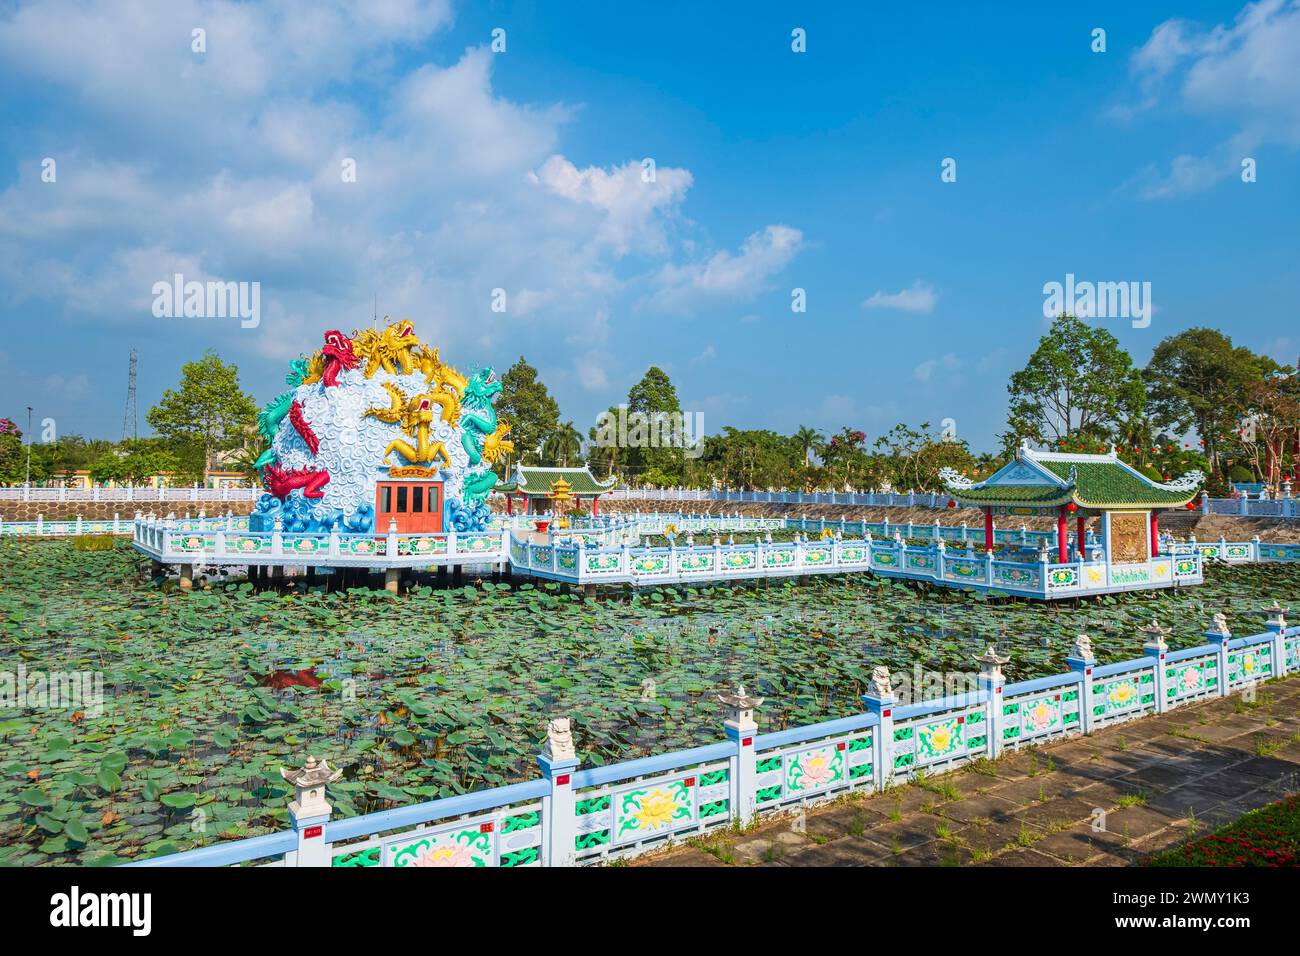 Vietnam, das Mekong Delta, eine Provinz von Giang, Chau Doc, Nui Sam Bezirk am Fuße des Mount Sam, eine bedeutende Wallfahrtsstätte, Huynh Dao buddhistische Pagode, Darstellung des Mekong-Flusses, der Fluss der neun Drachen genannt wird Stockfoto